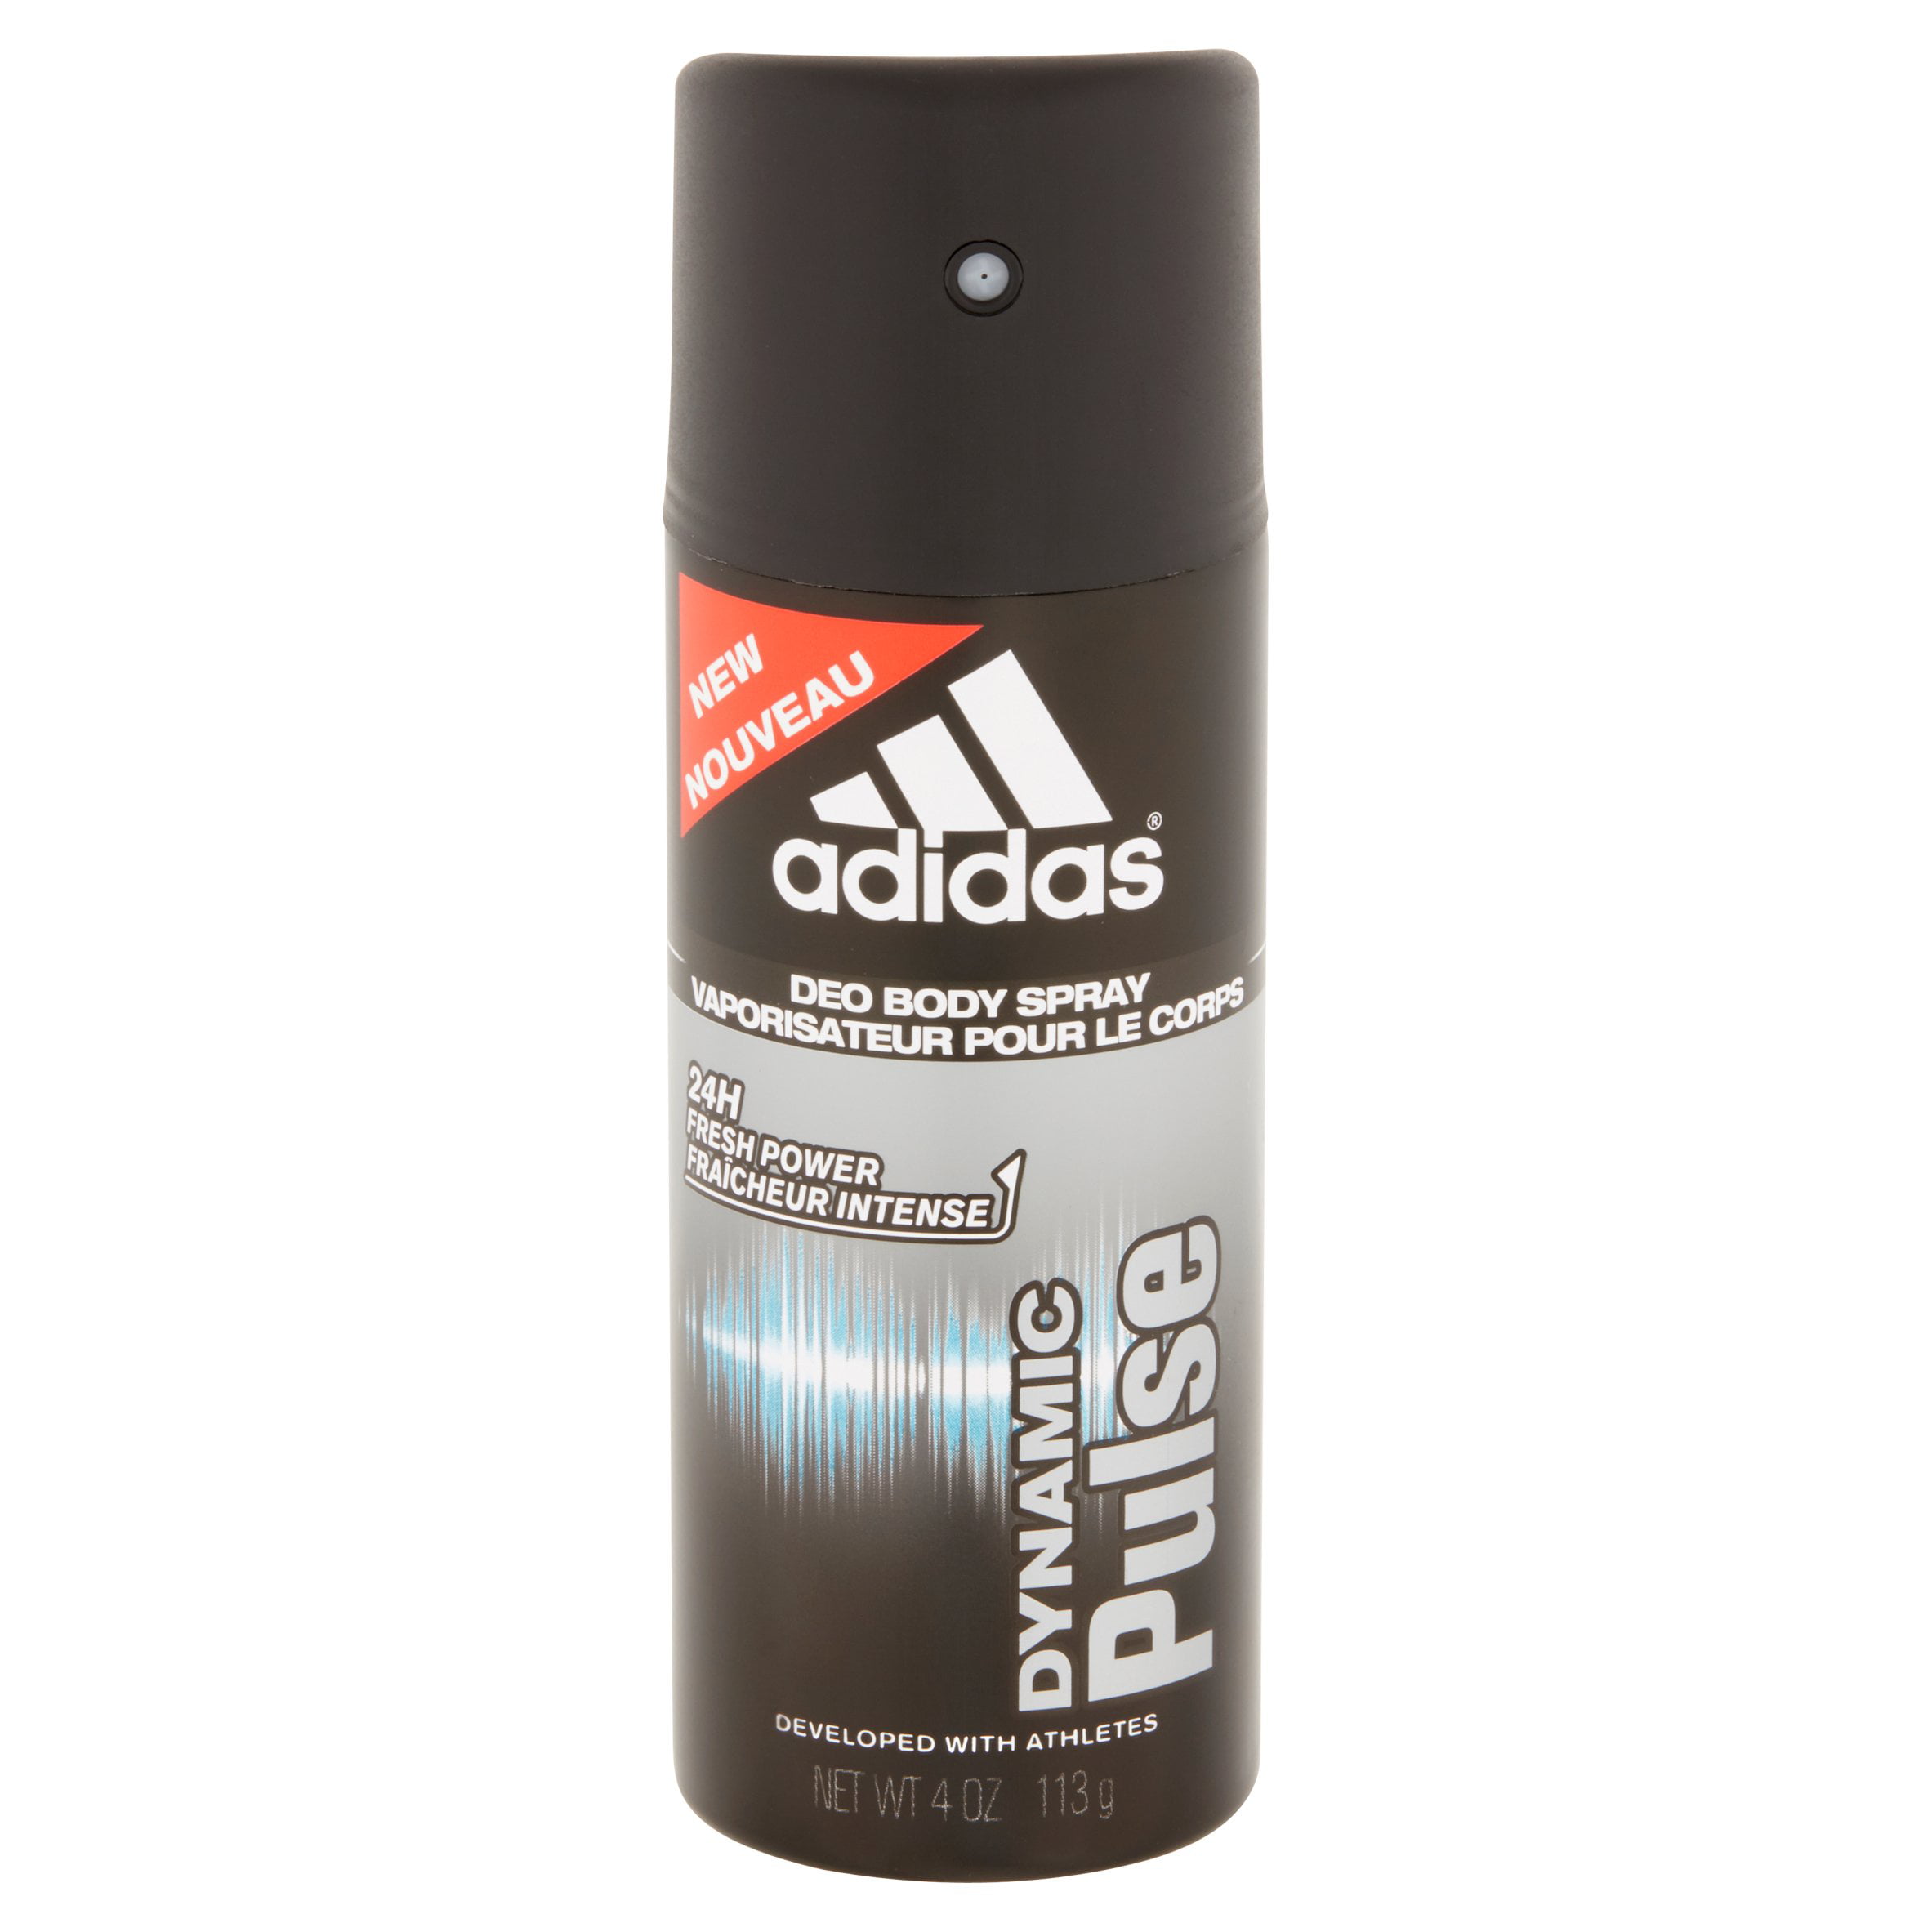 adidas dynamic pulse deo body spray